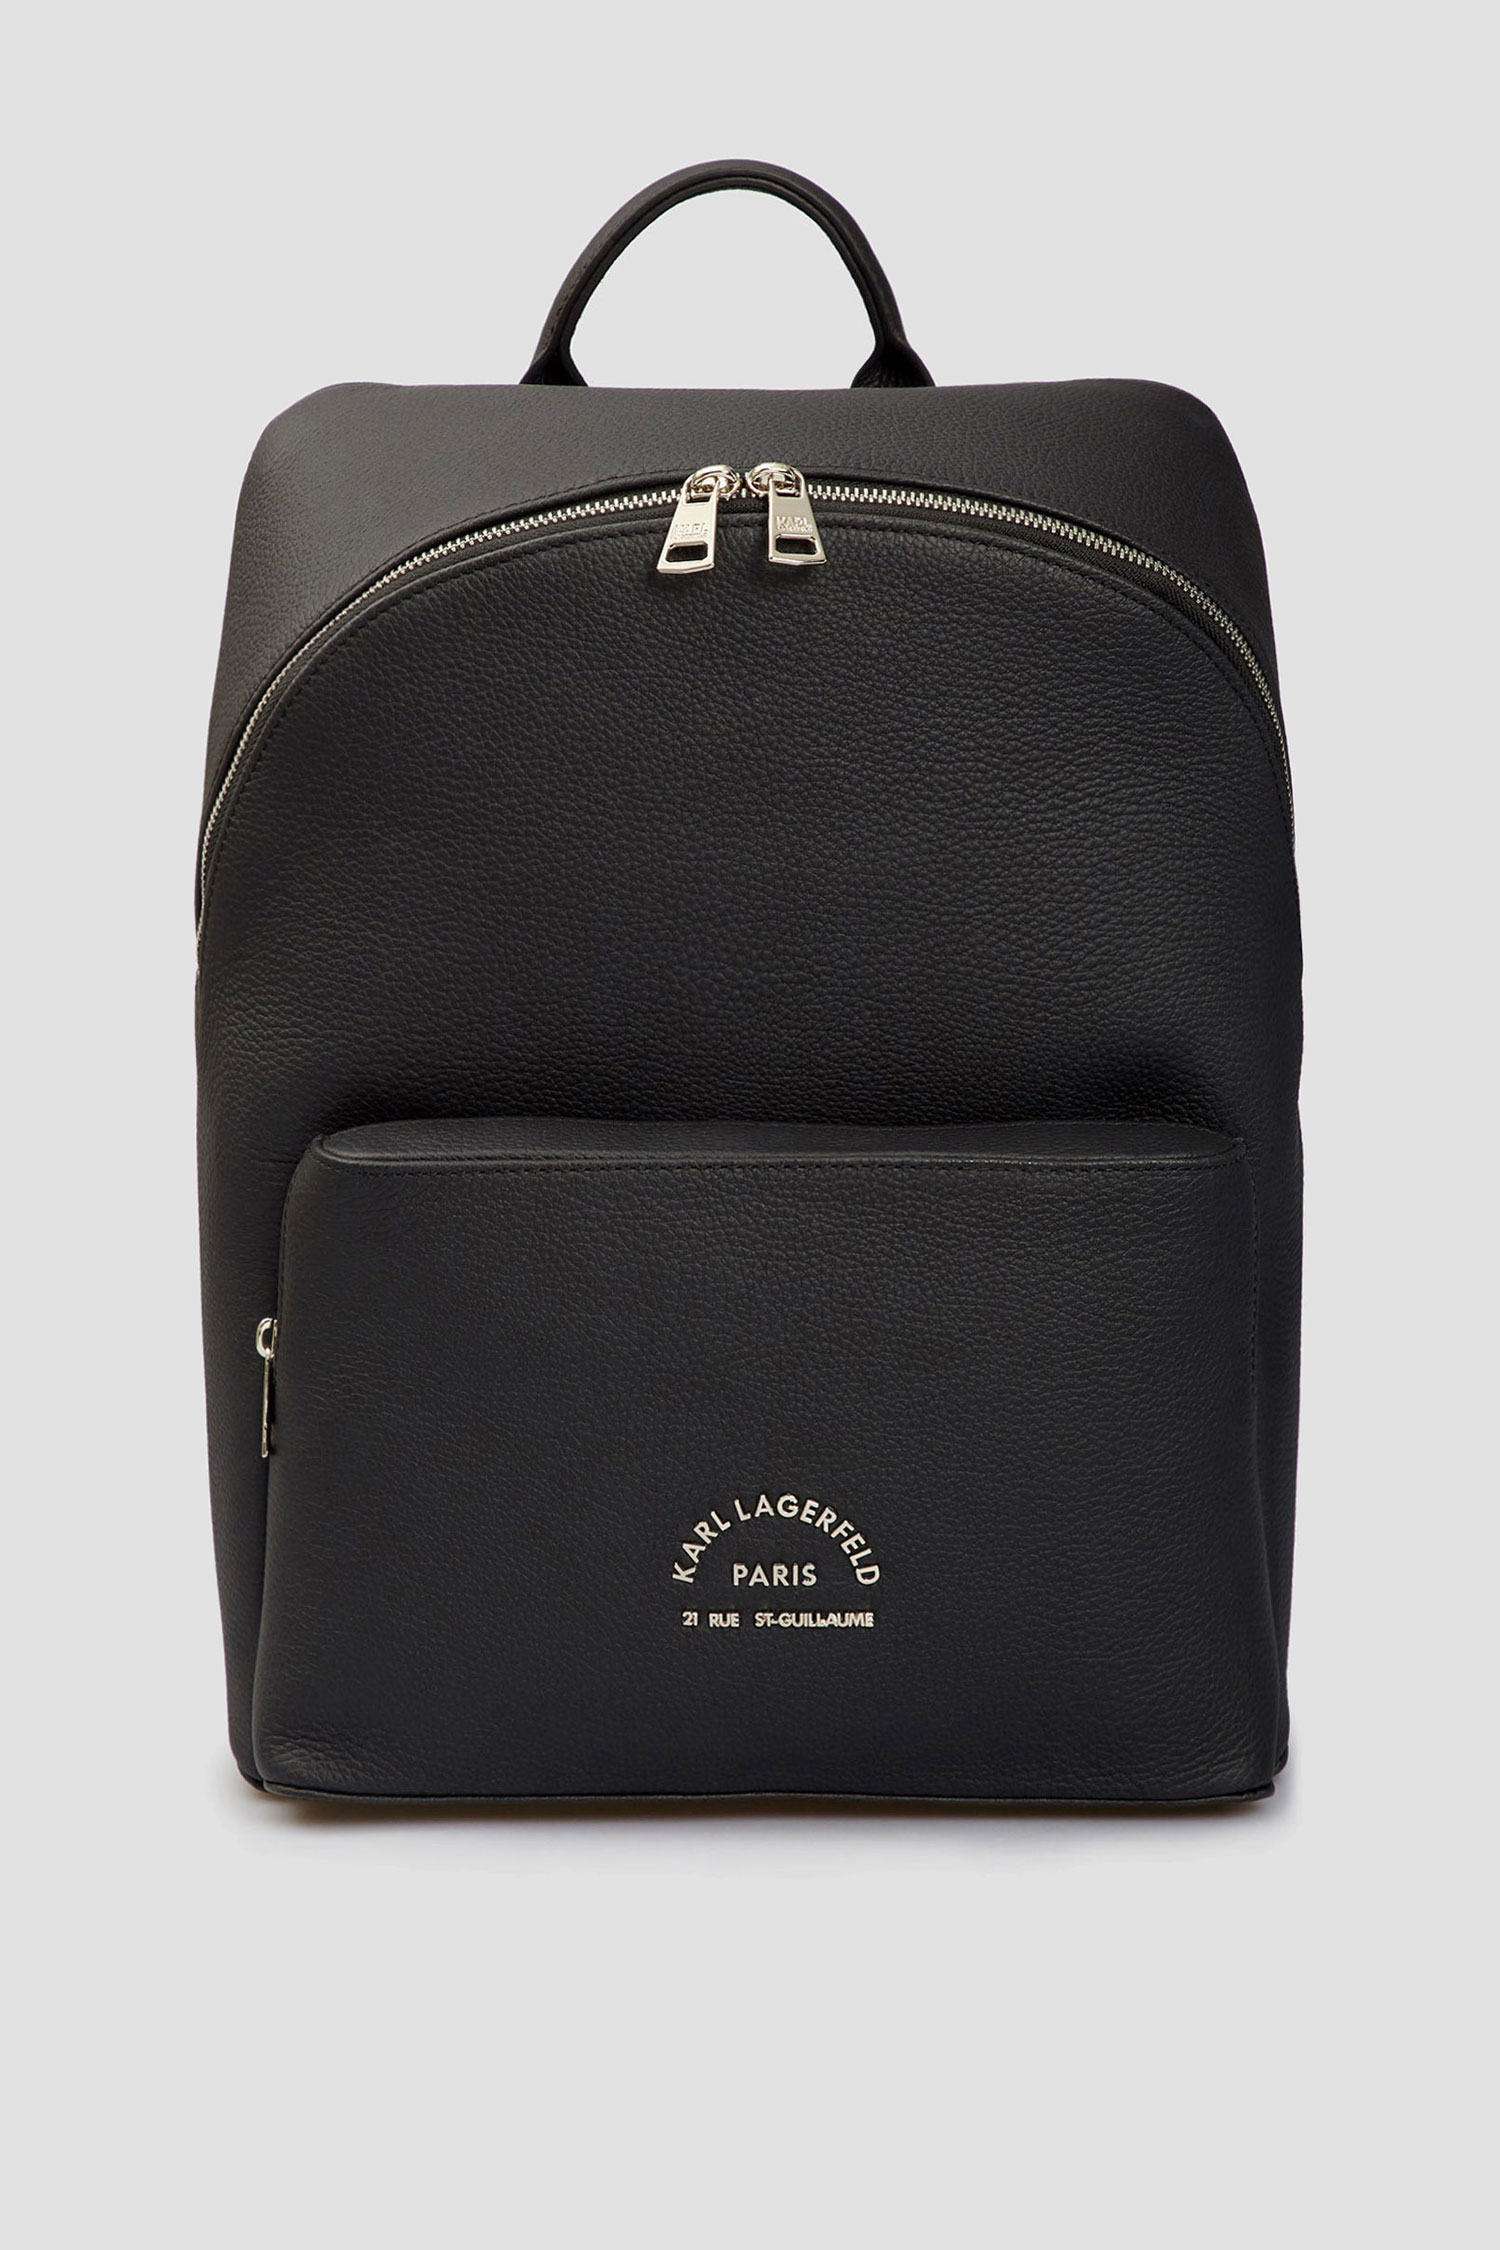 Мужской черный кожаный рюкзак Karl Lagerfeld 521451.815908;990